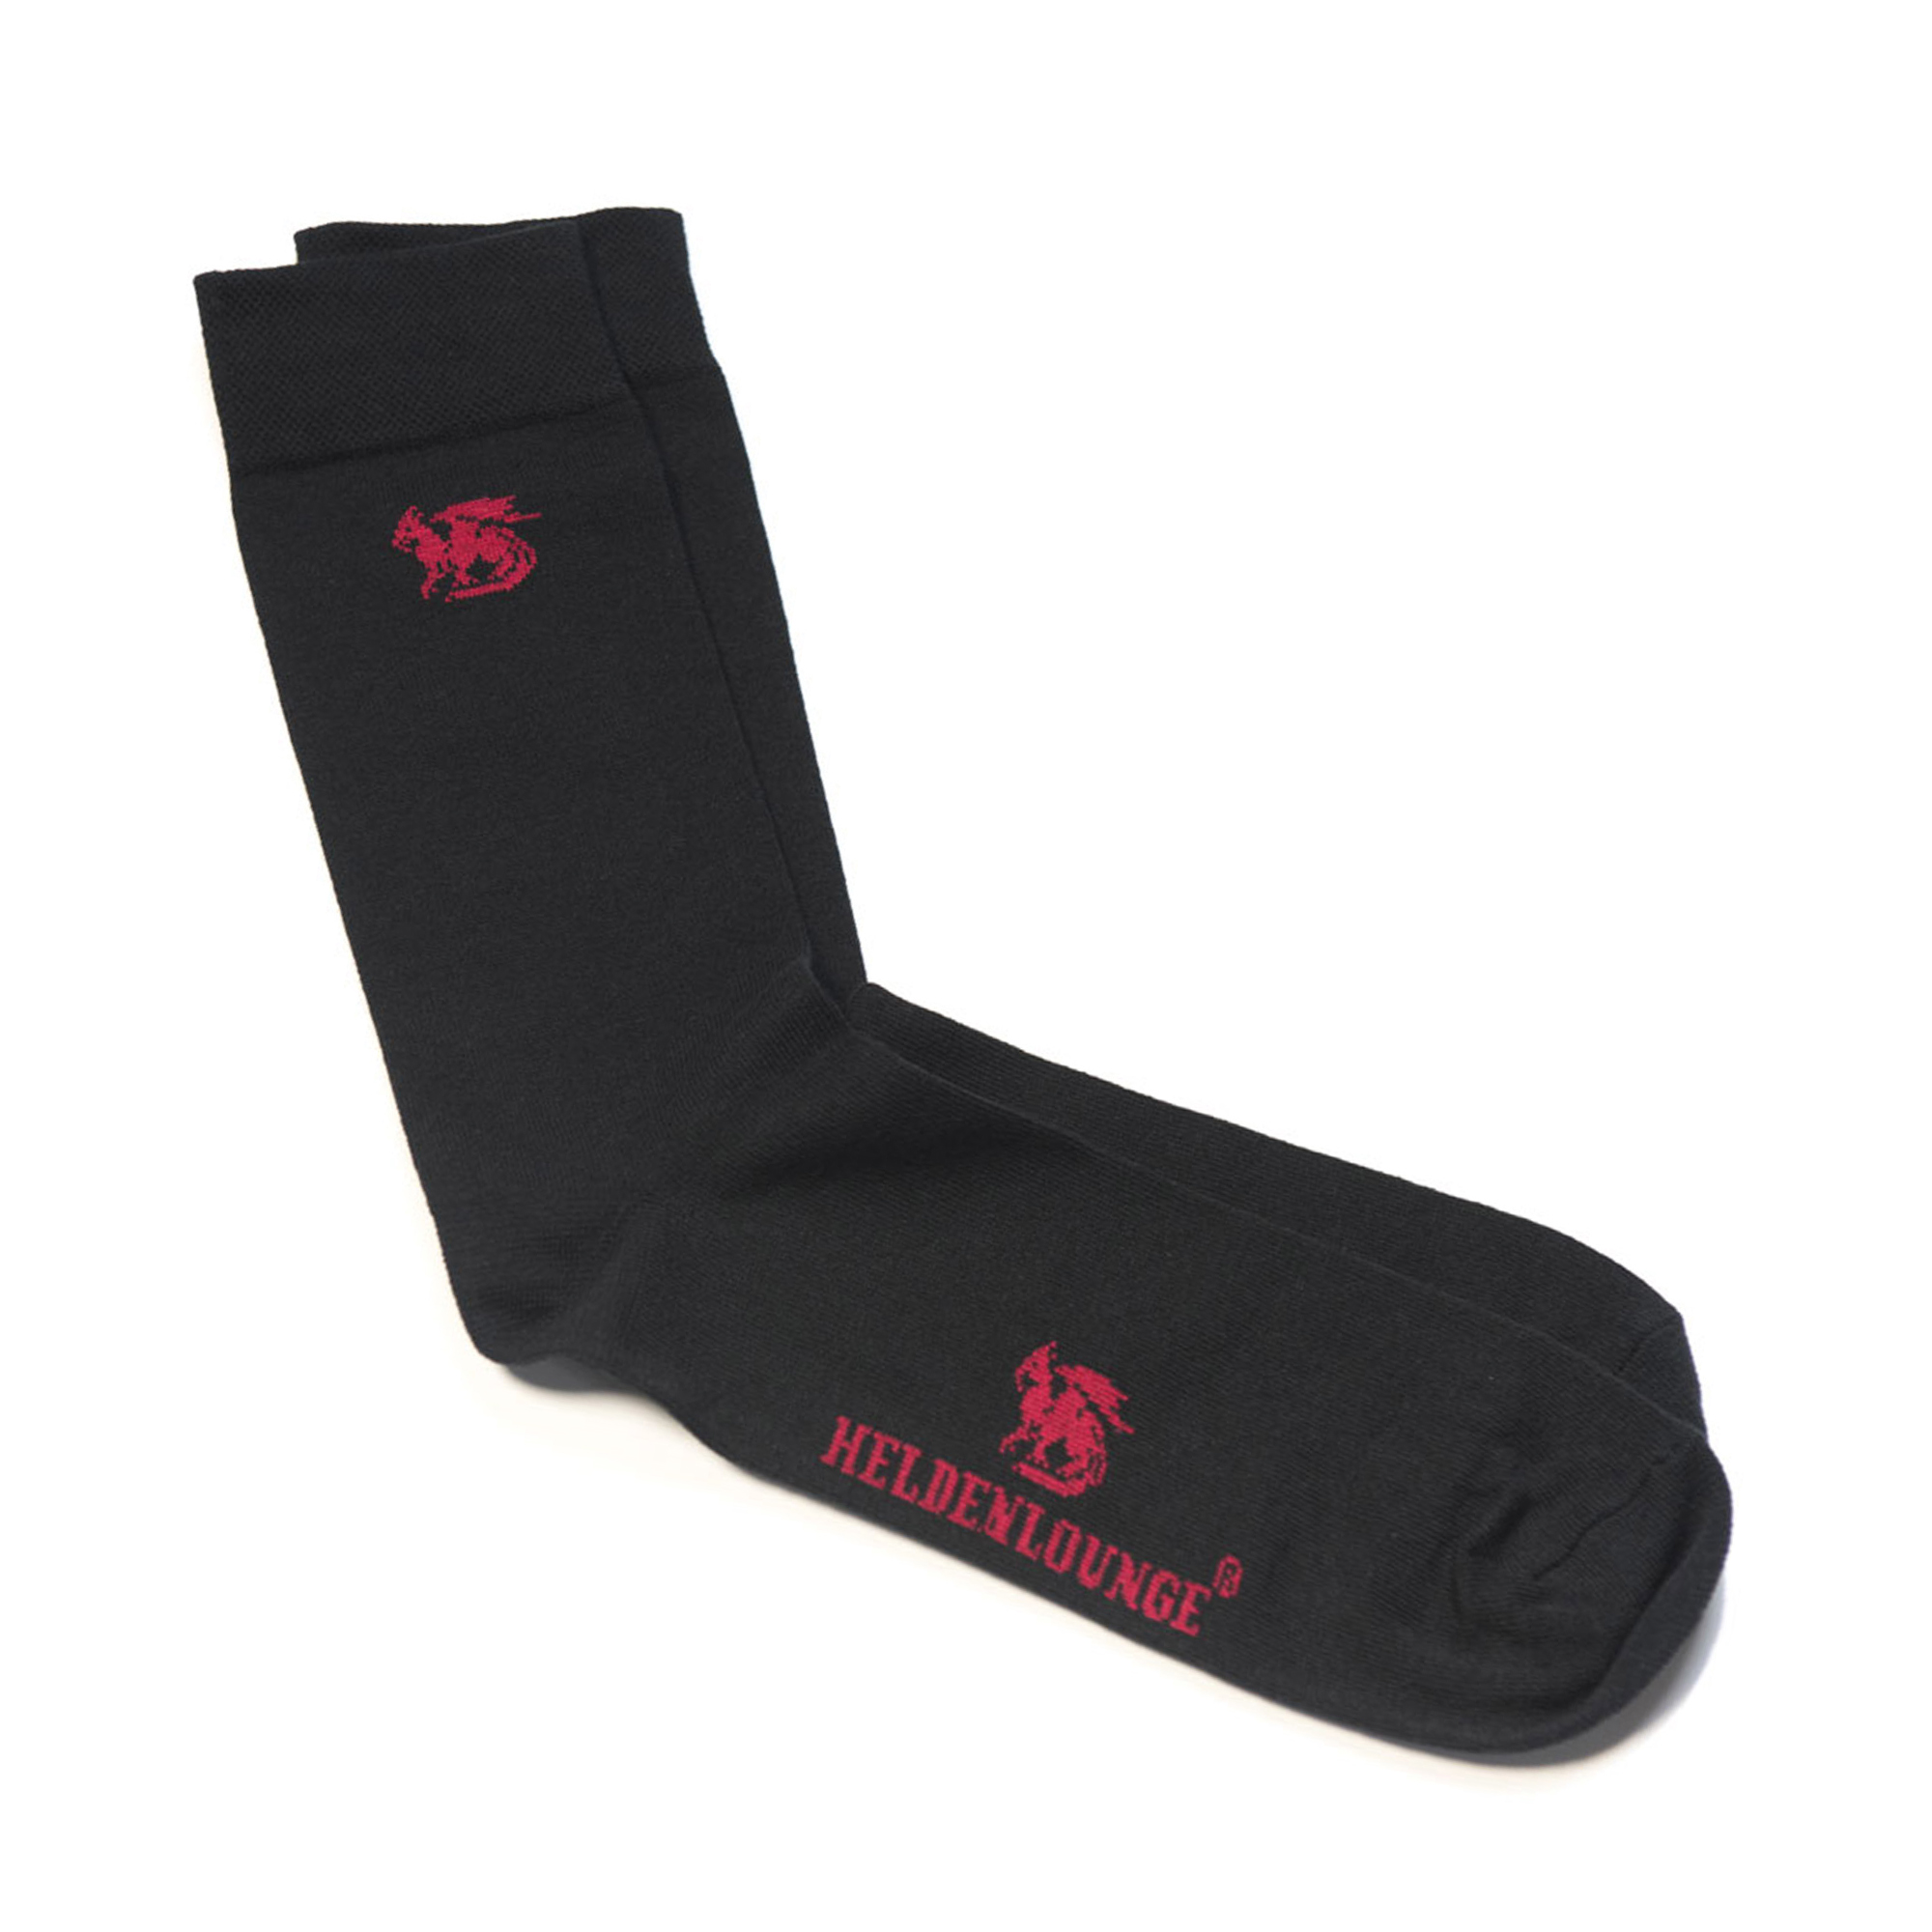 Ab 35 Euro - Heldenlounge Socken - rot oder schwarz